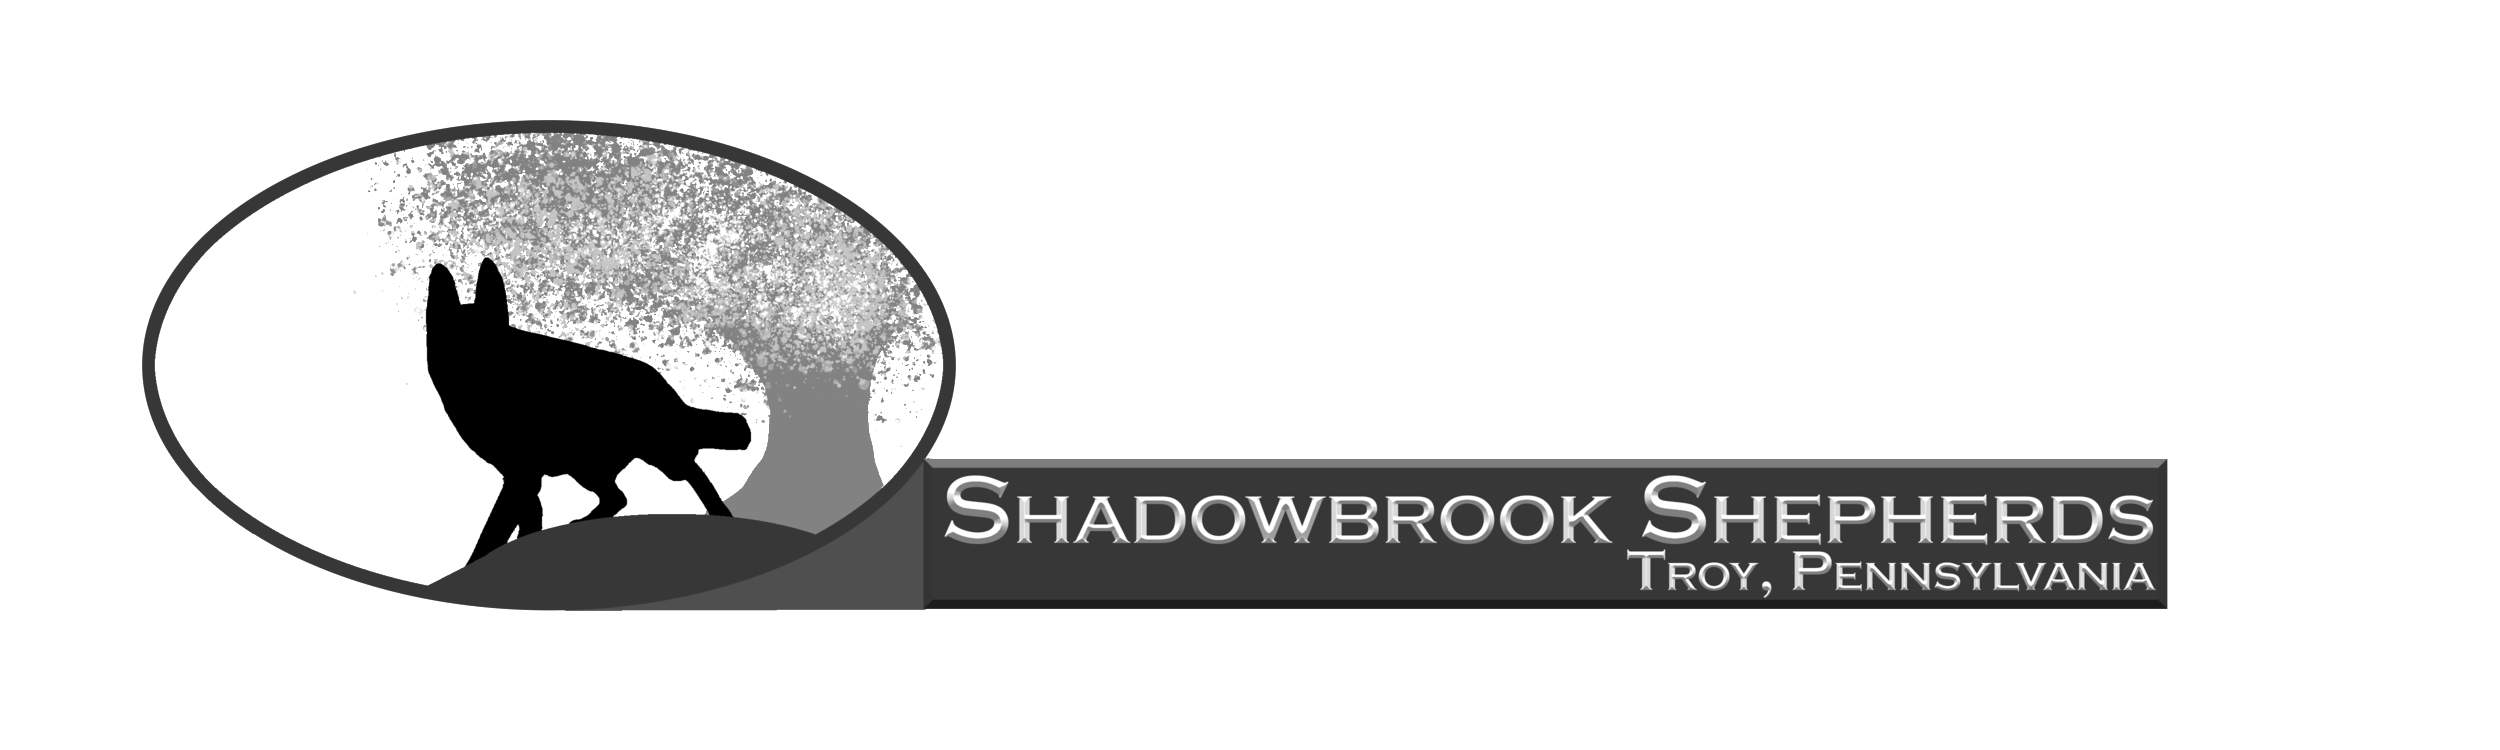 Shadowbrook Shepherds